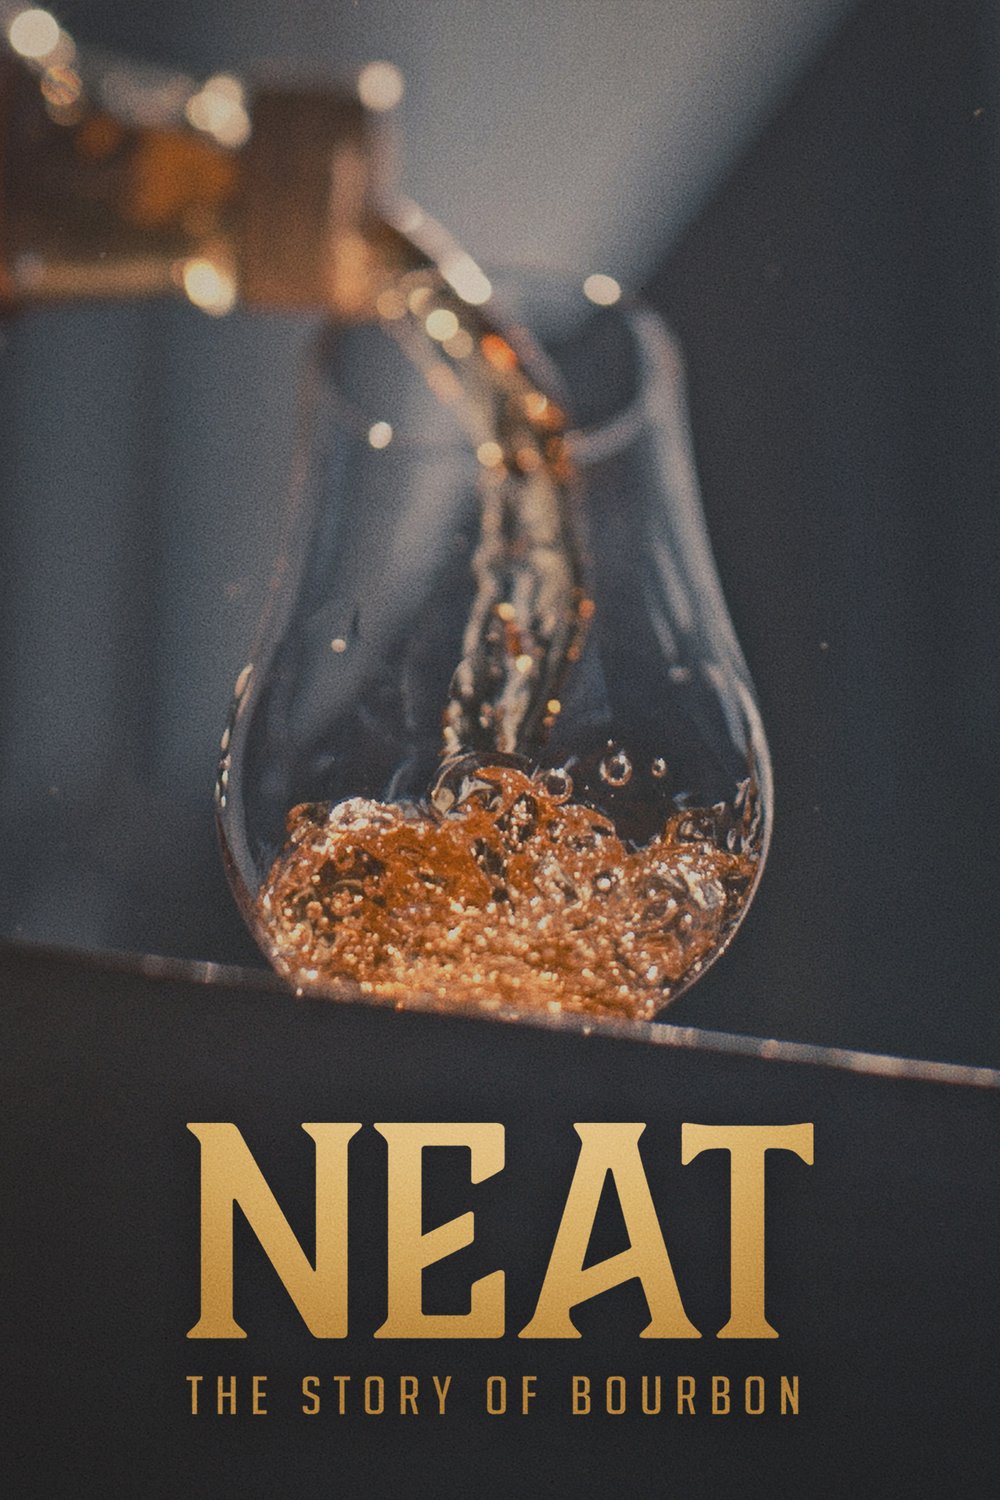 L'affiche du film Neat: The Story of Bourbon